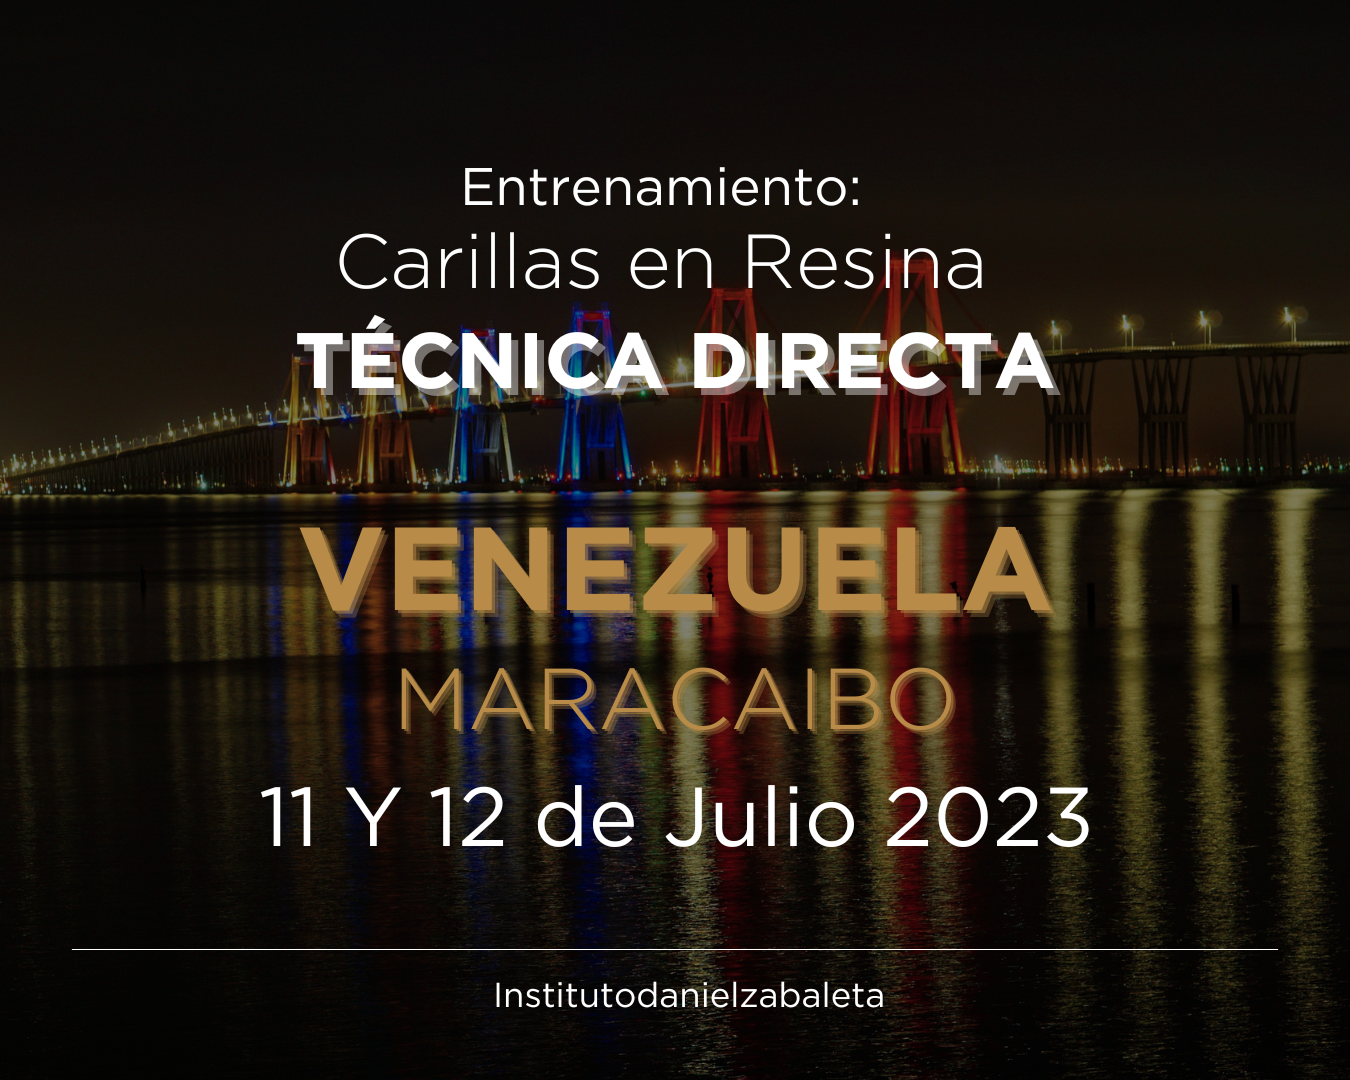 Website Entrenamiento Maracaibo(1350 × 1080 px)